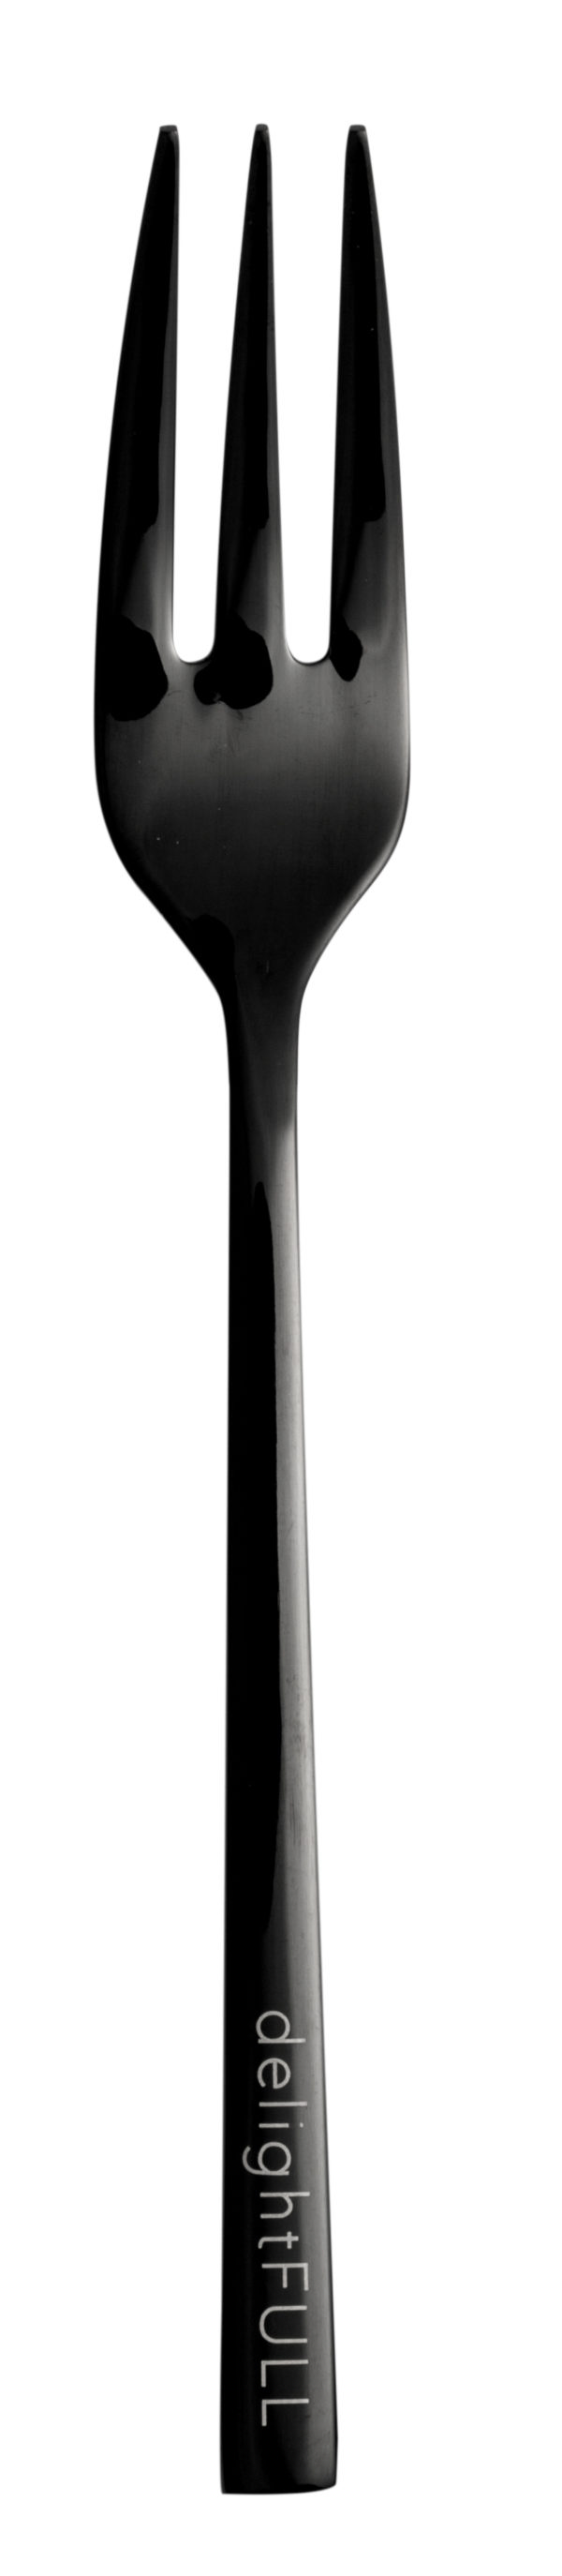 Nádherný nadčasový dizajn nerezového príborového setu v čiernej farbe s jemným gravírovaným nápisom na rúčke príboru pozostáva z 5 ks.